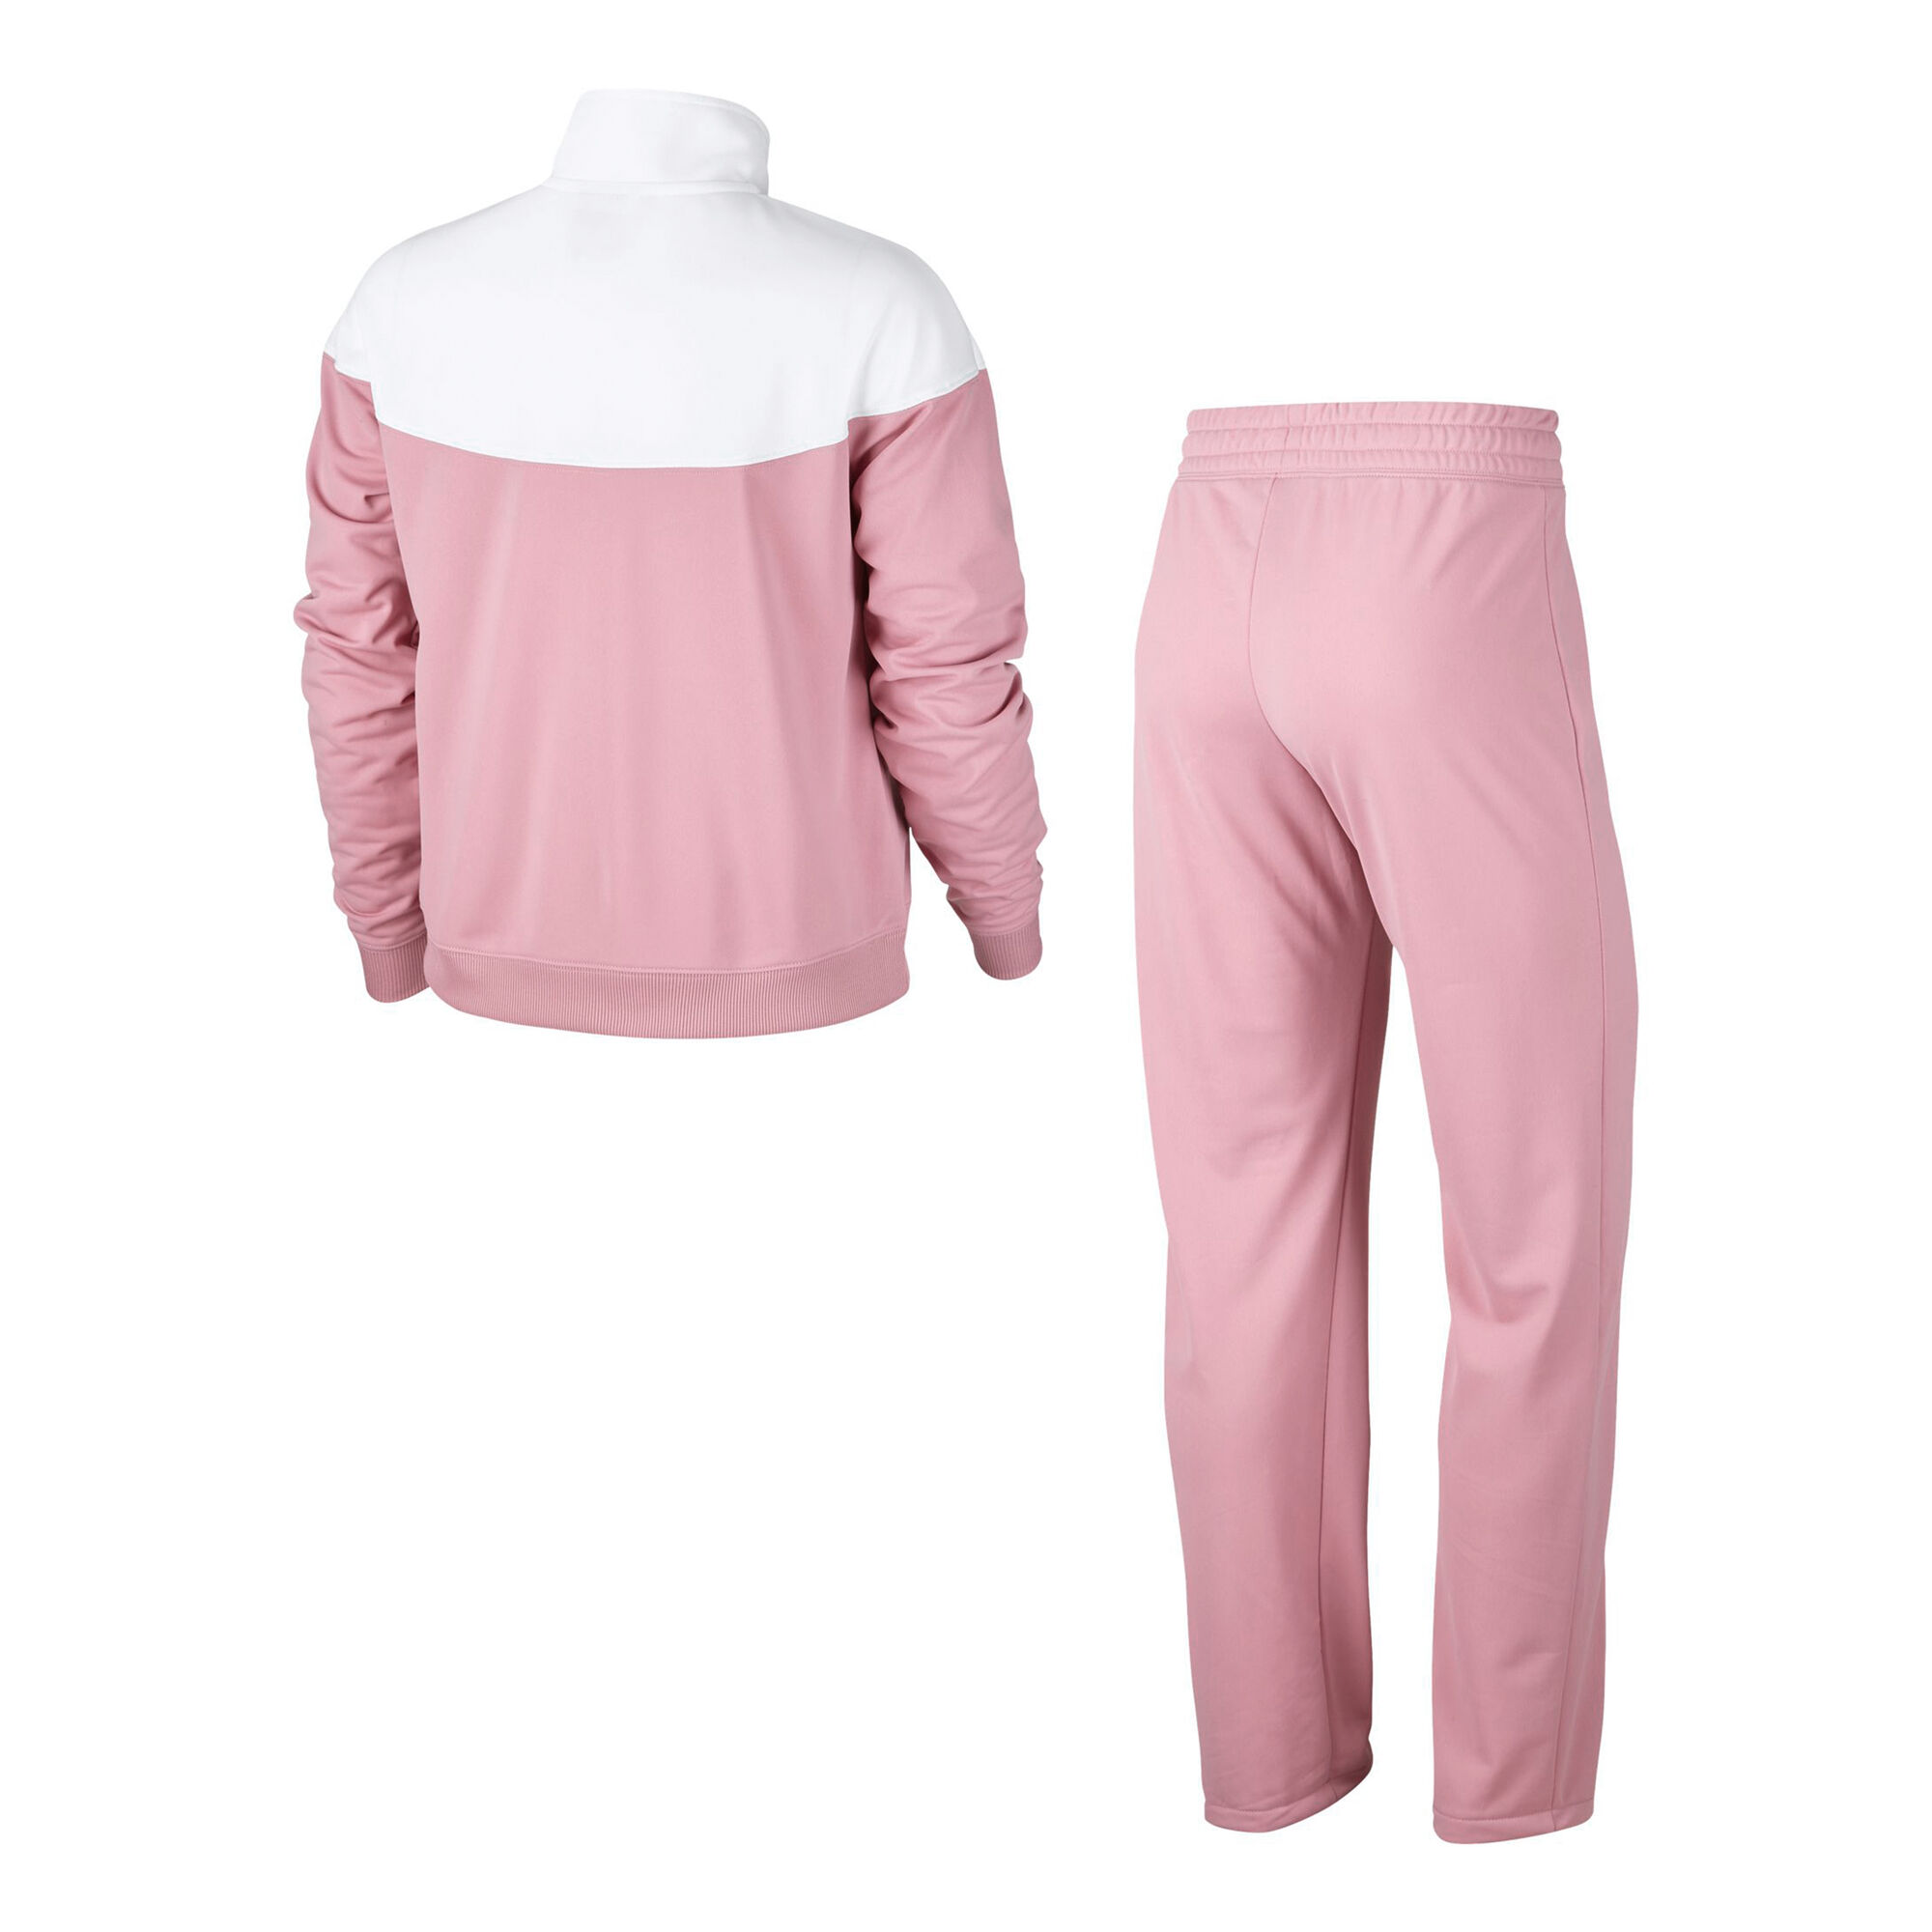 Buy Nike Sportswear Survêtement Femmes Rosé, Blanc online